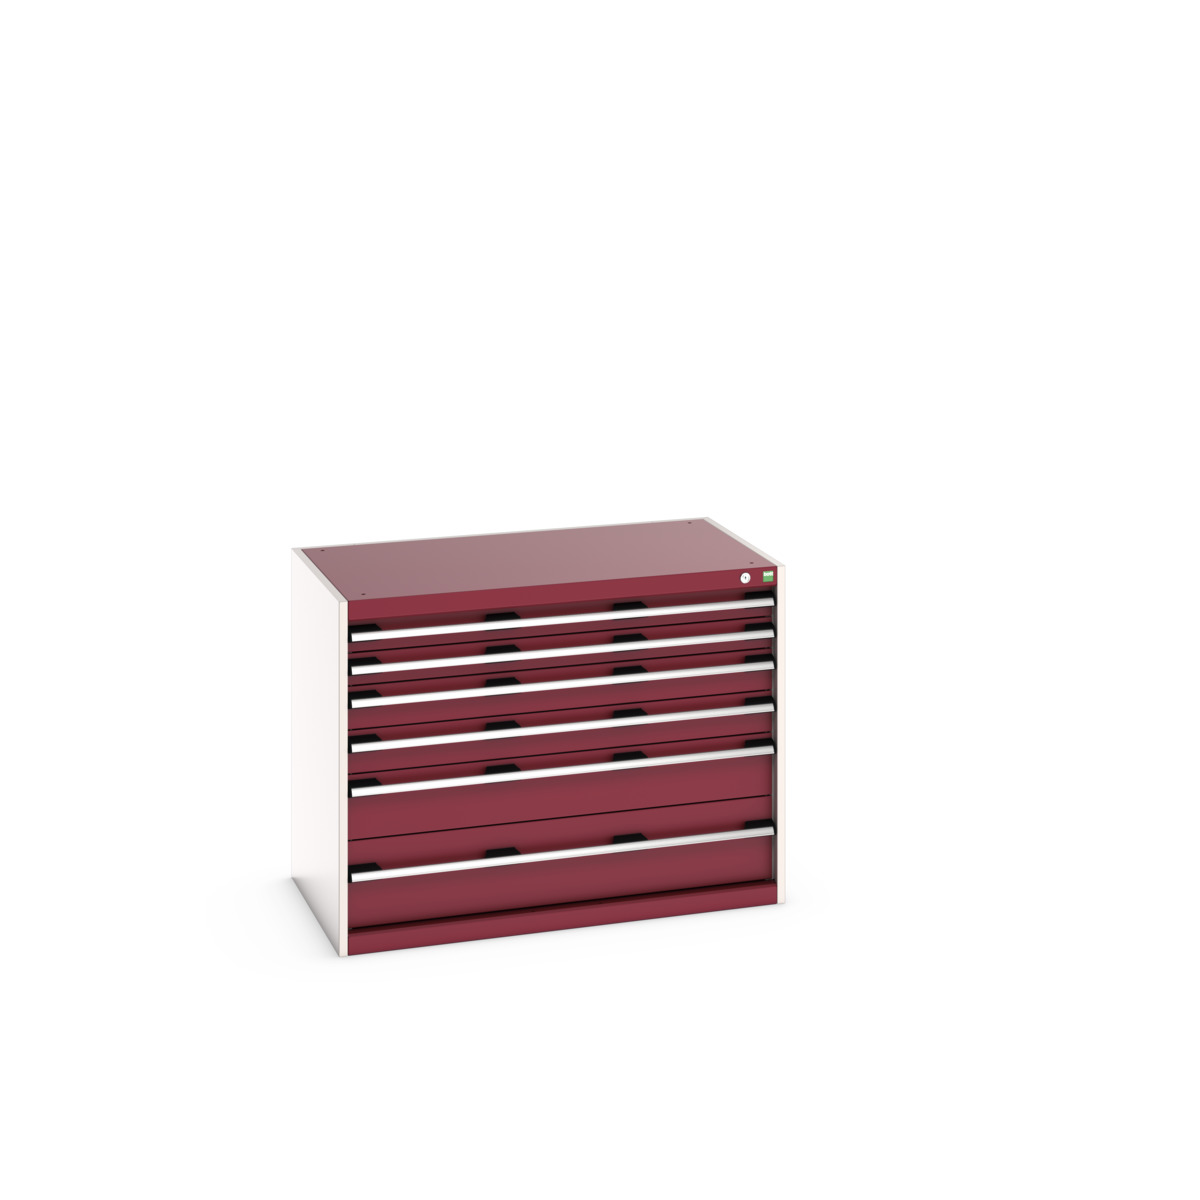 40021192.24V - cubio drawer cabinet